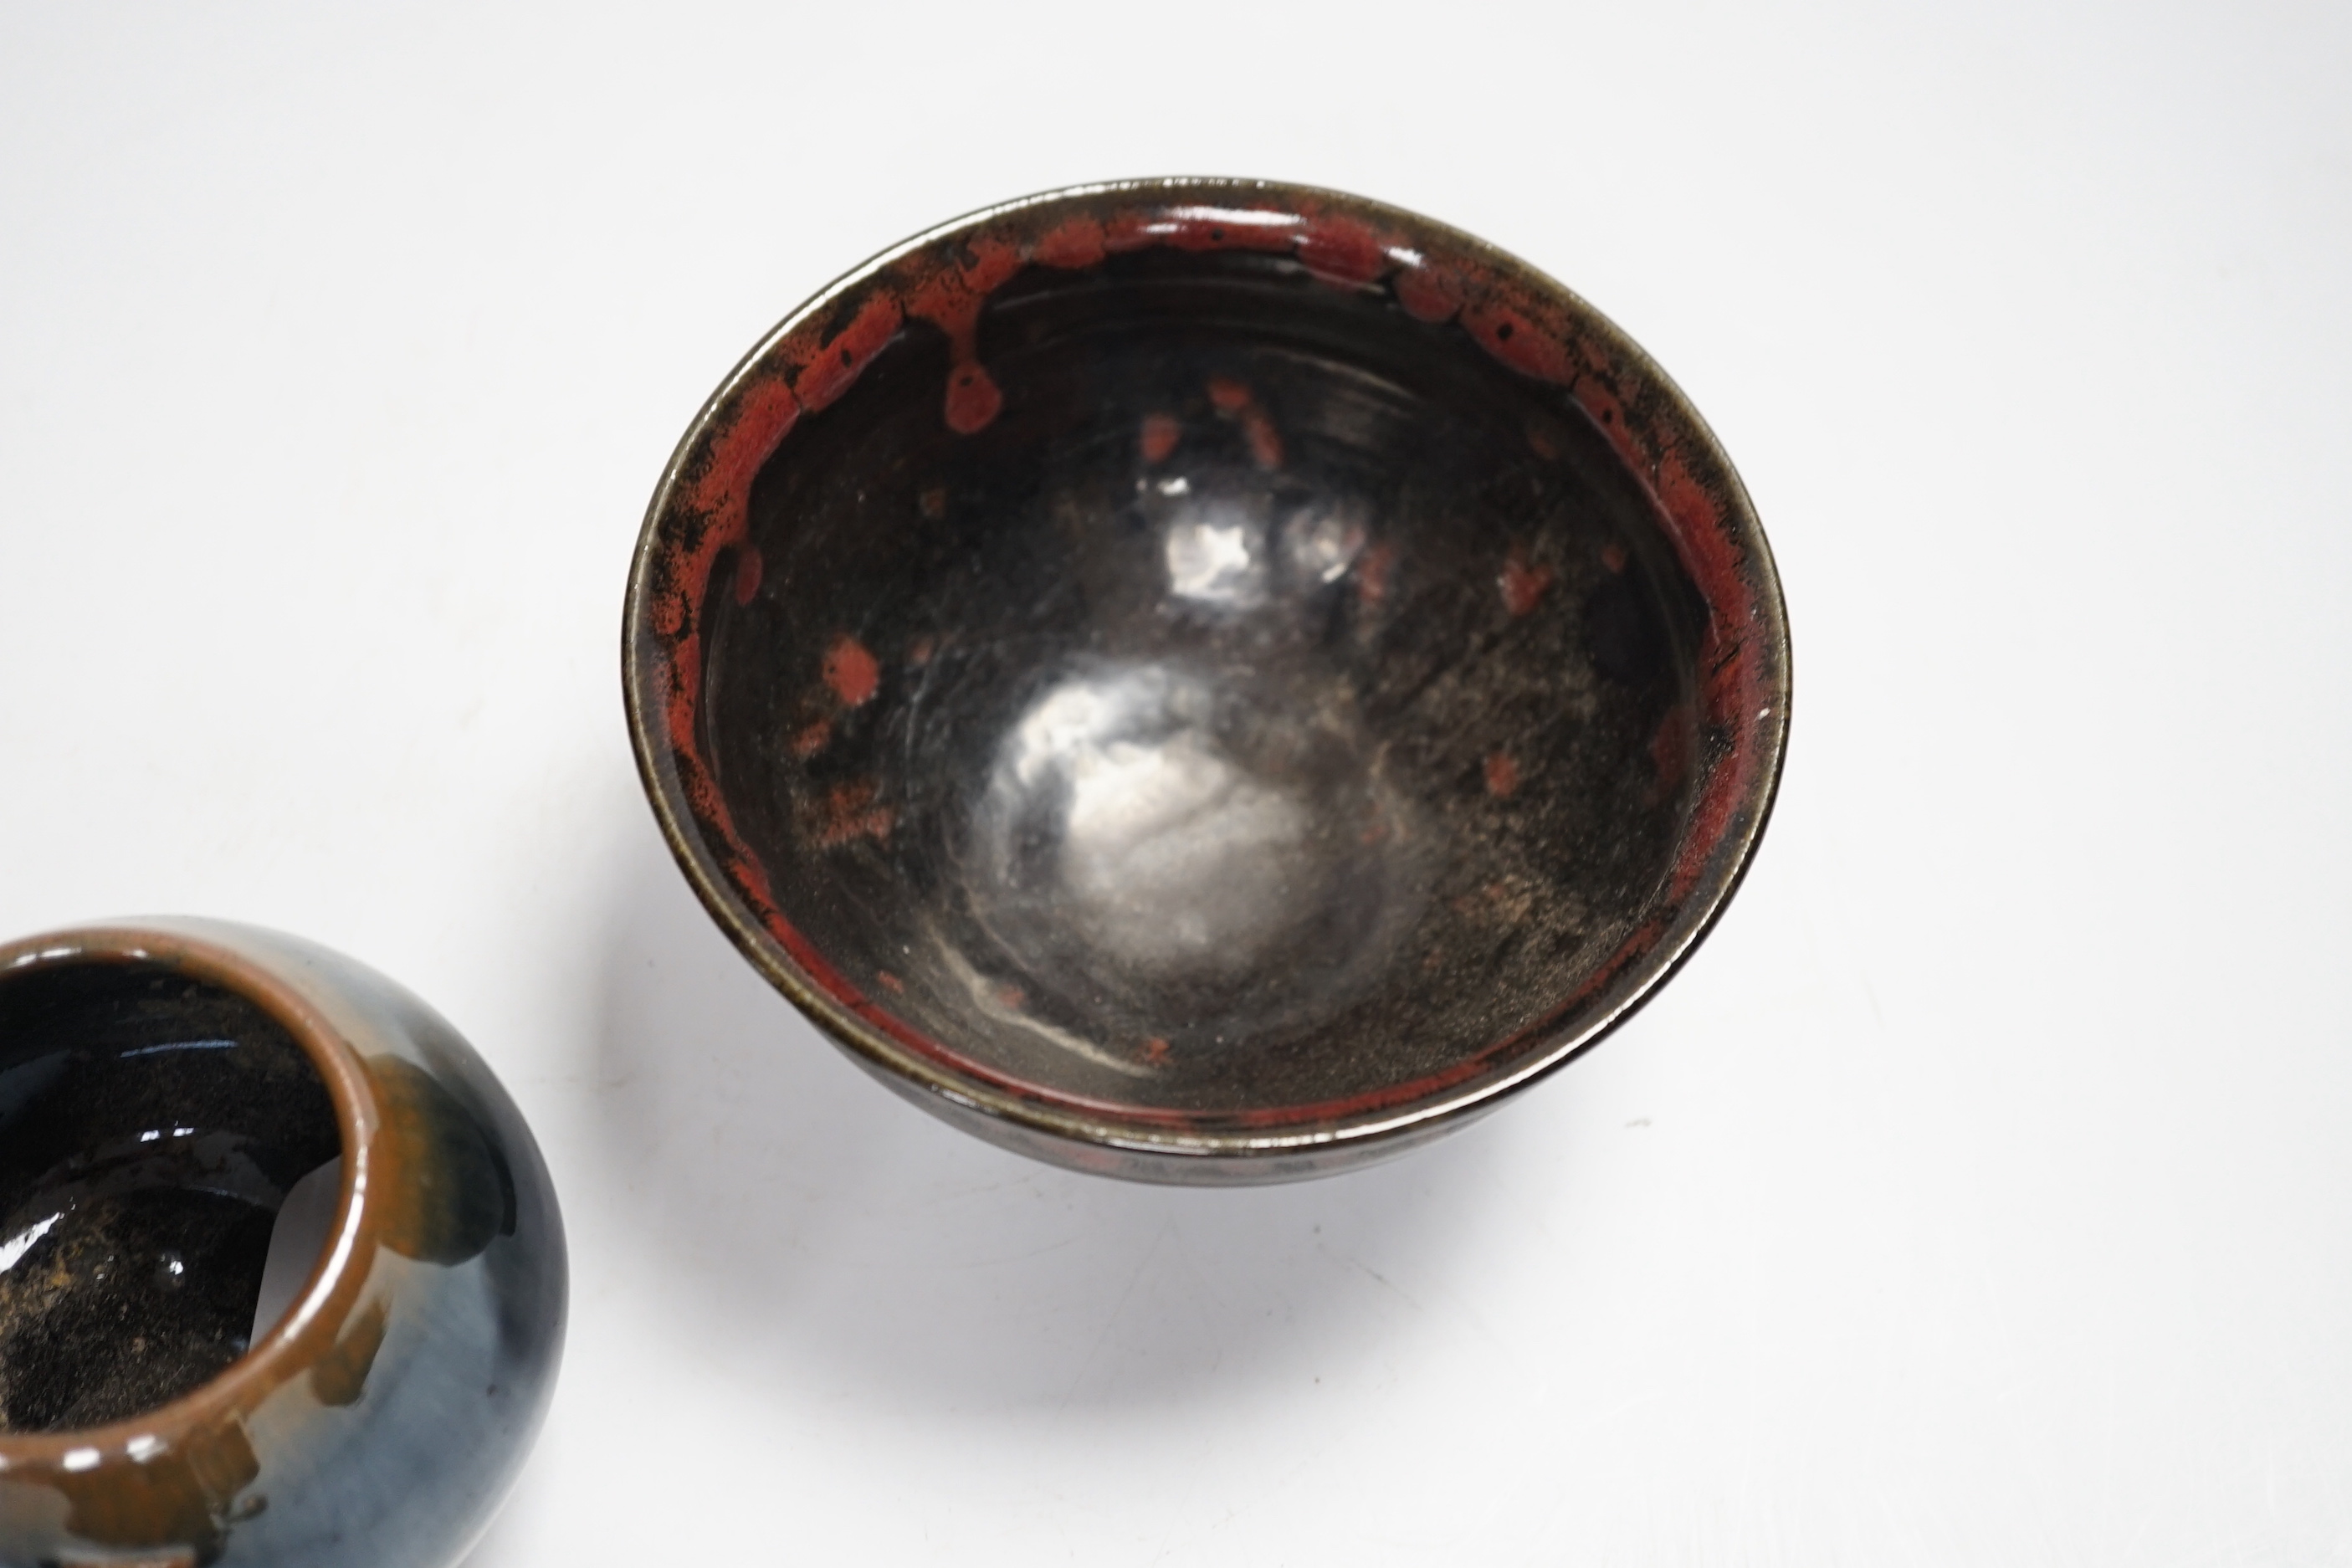 Two Chinese jizhou-style bowls, 7cm